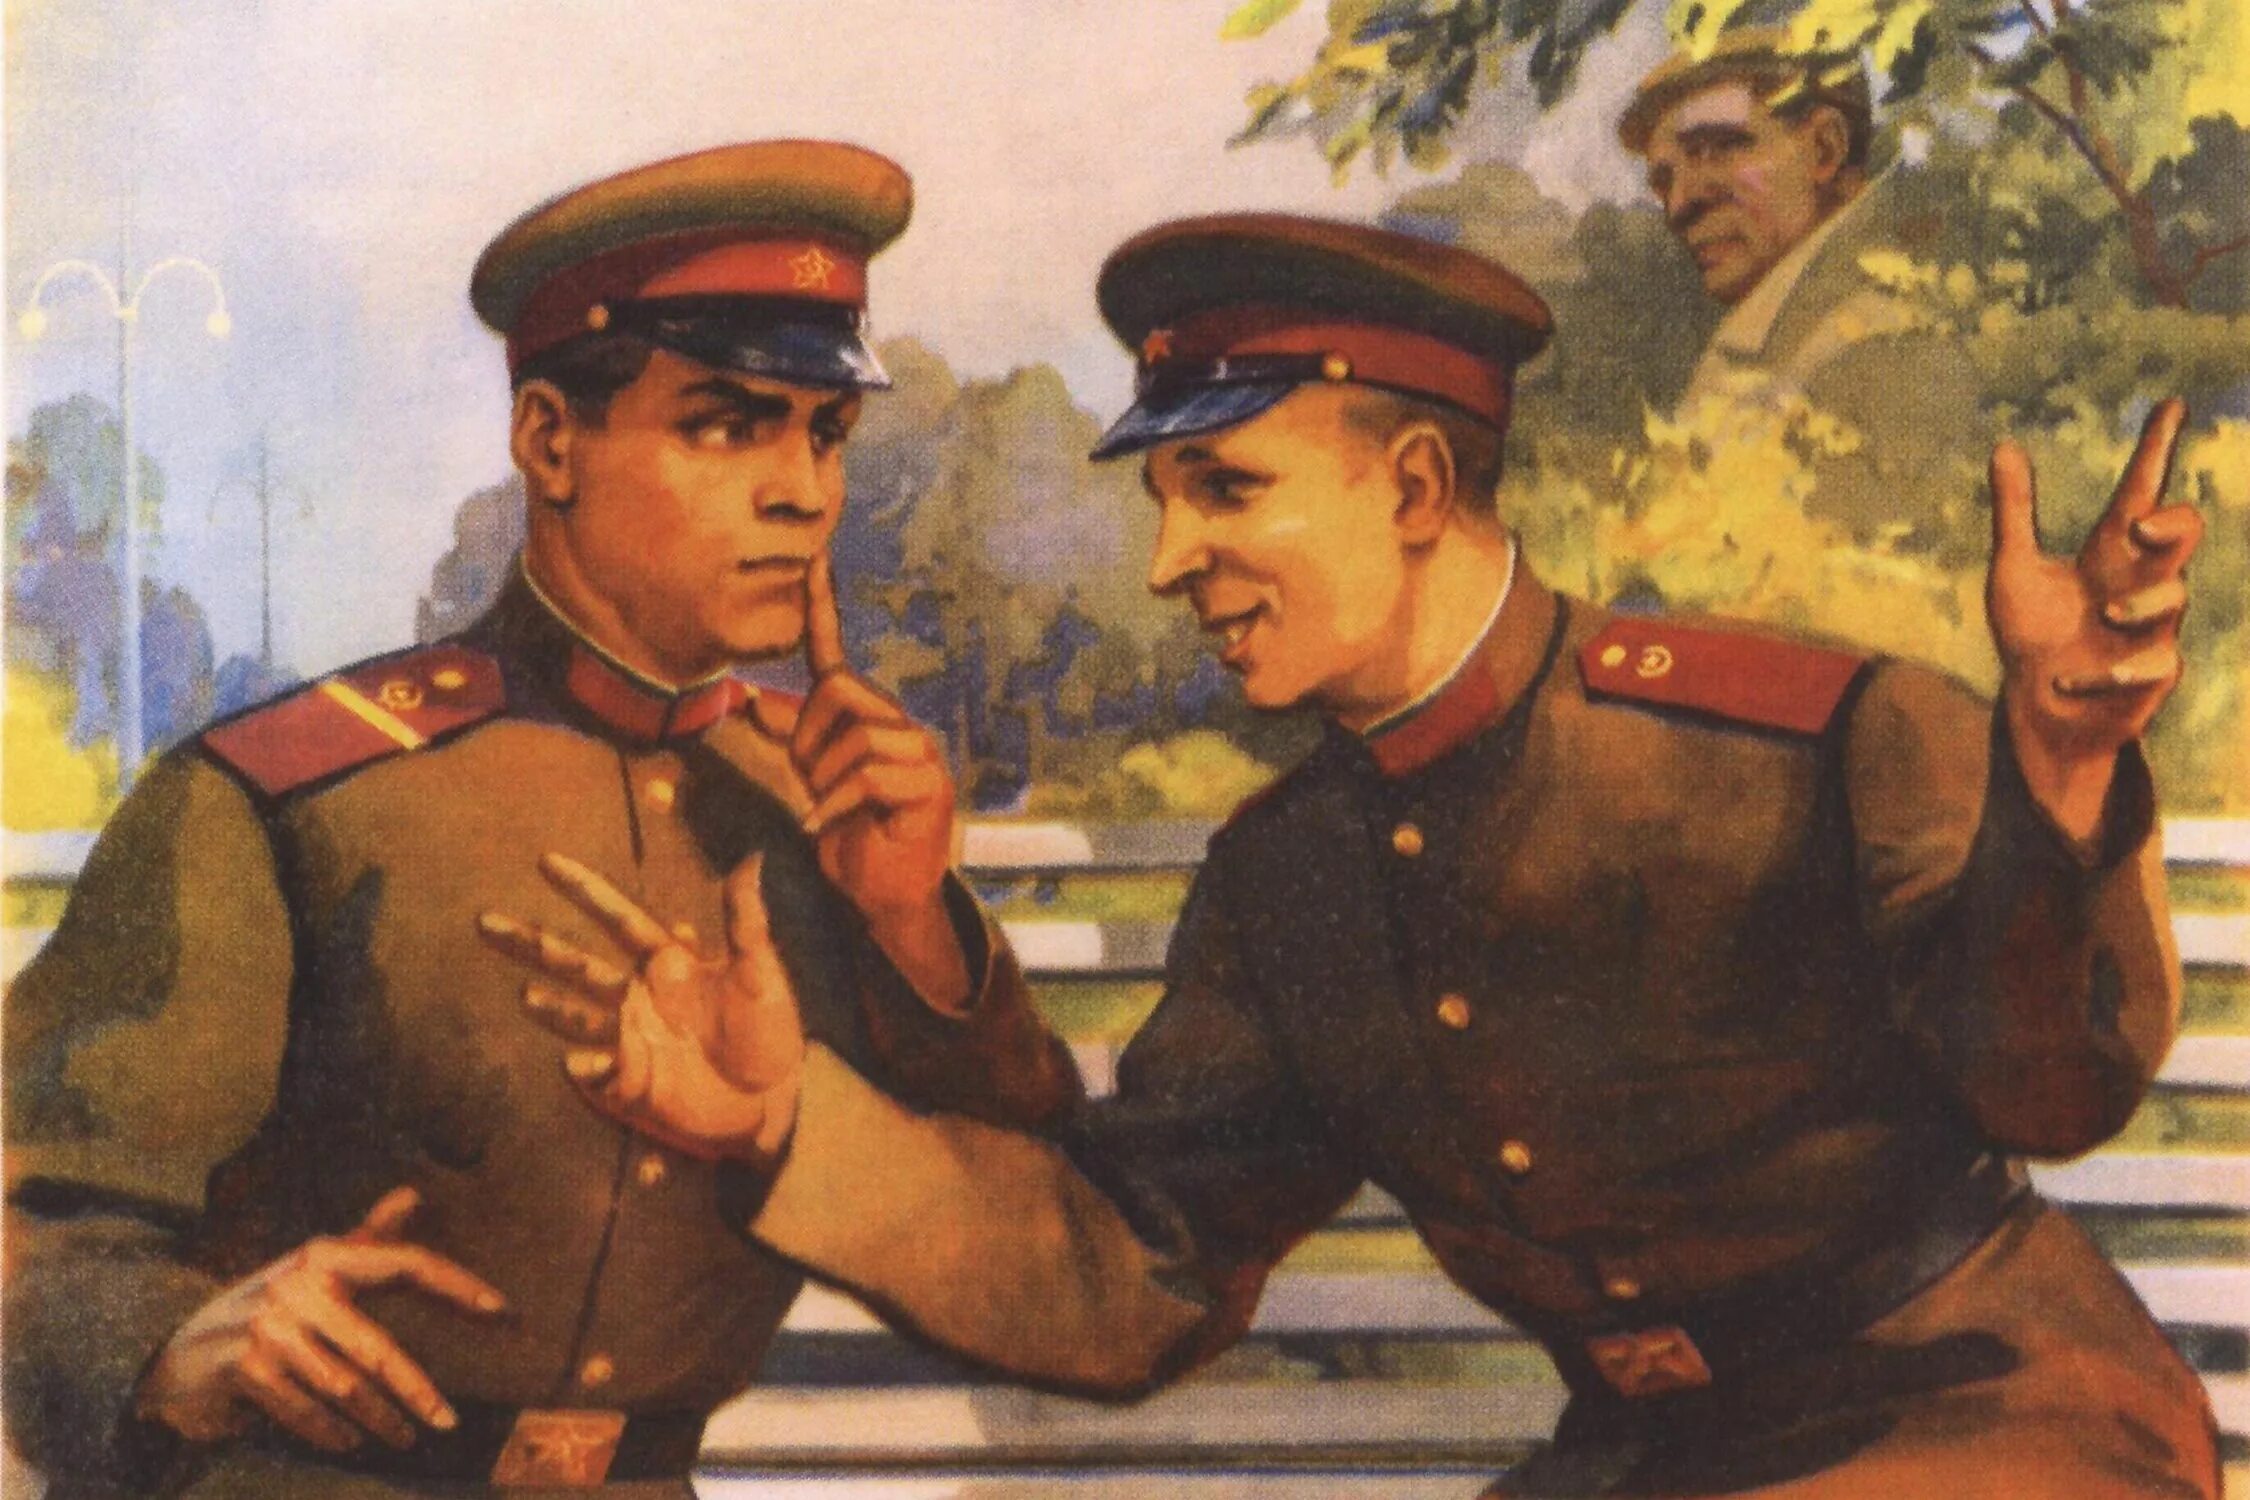 Советские плакаты про гос тайну. Плакаты про секретность. Не Болтай строго храни военную и государственную тайну плакат. Плакат болтун находка для врага.